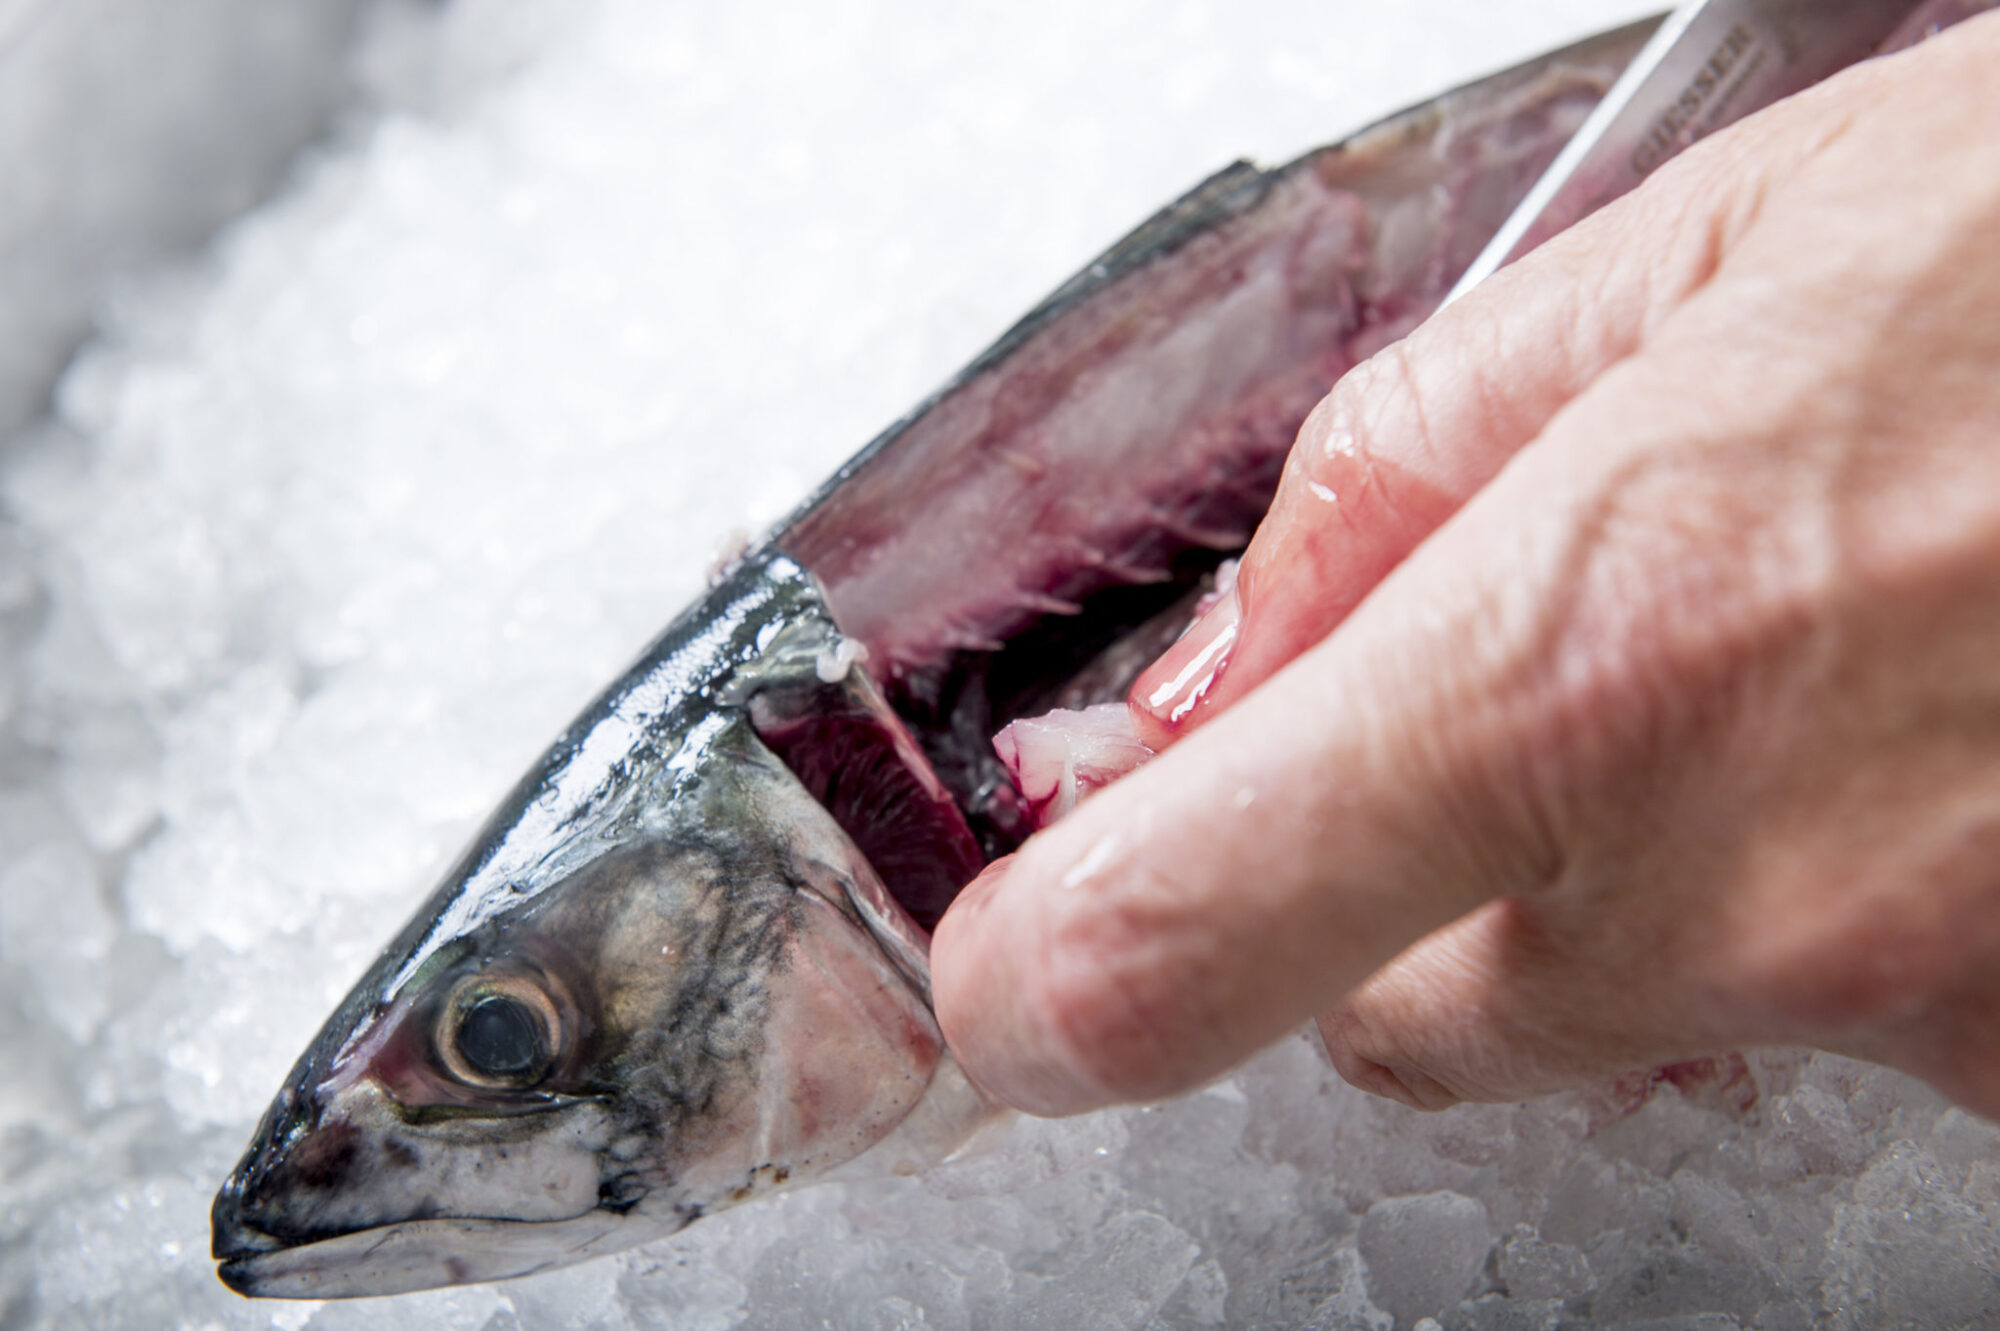 Post-mortem gaping response to crowding in Atlantic mackerel fillets.